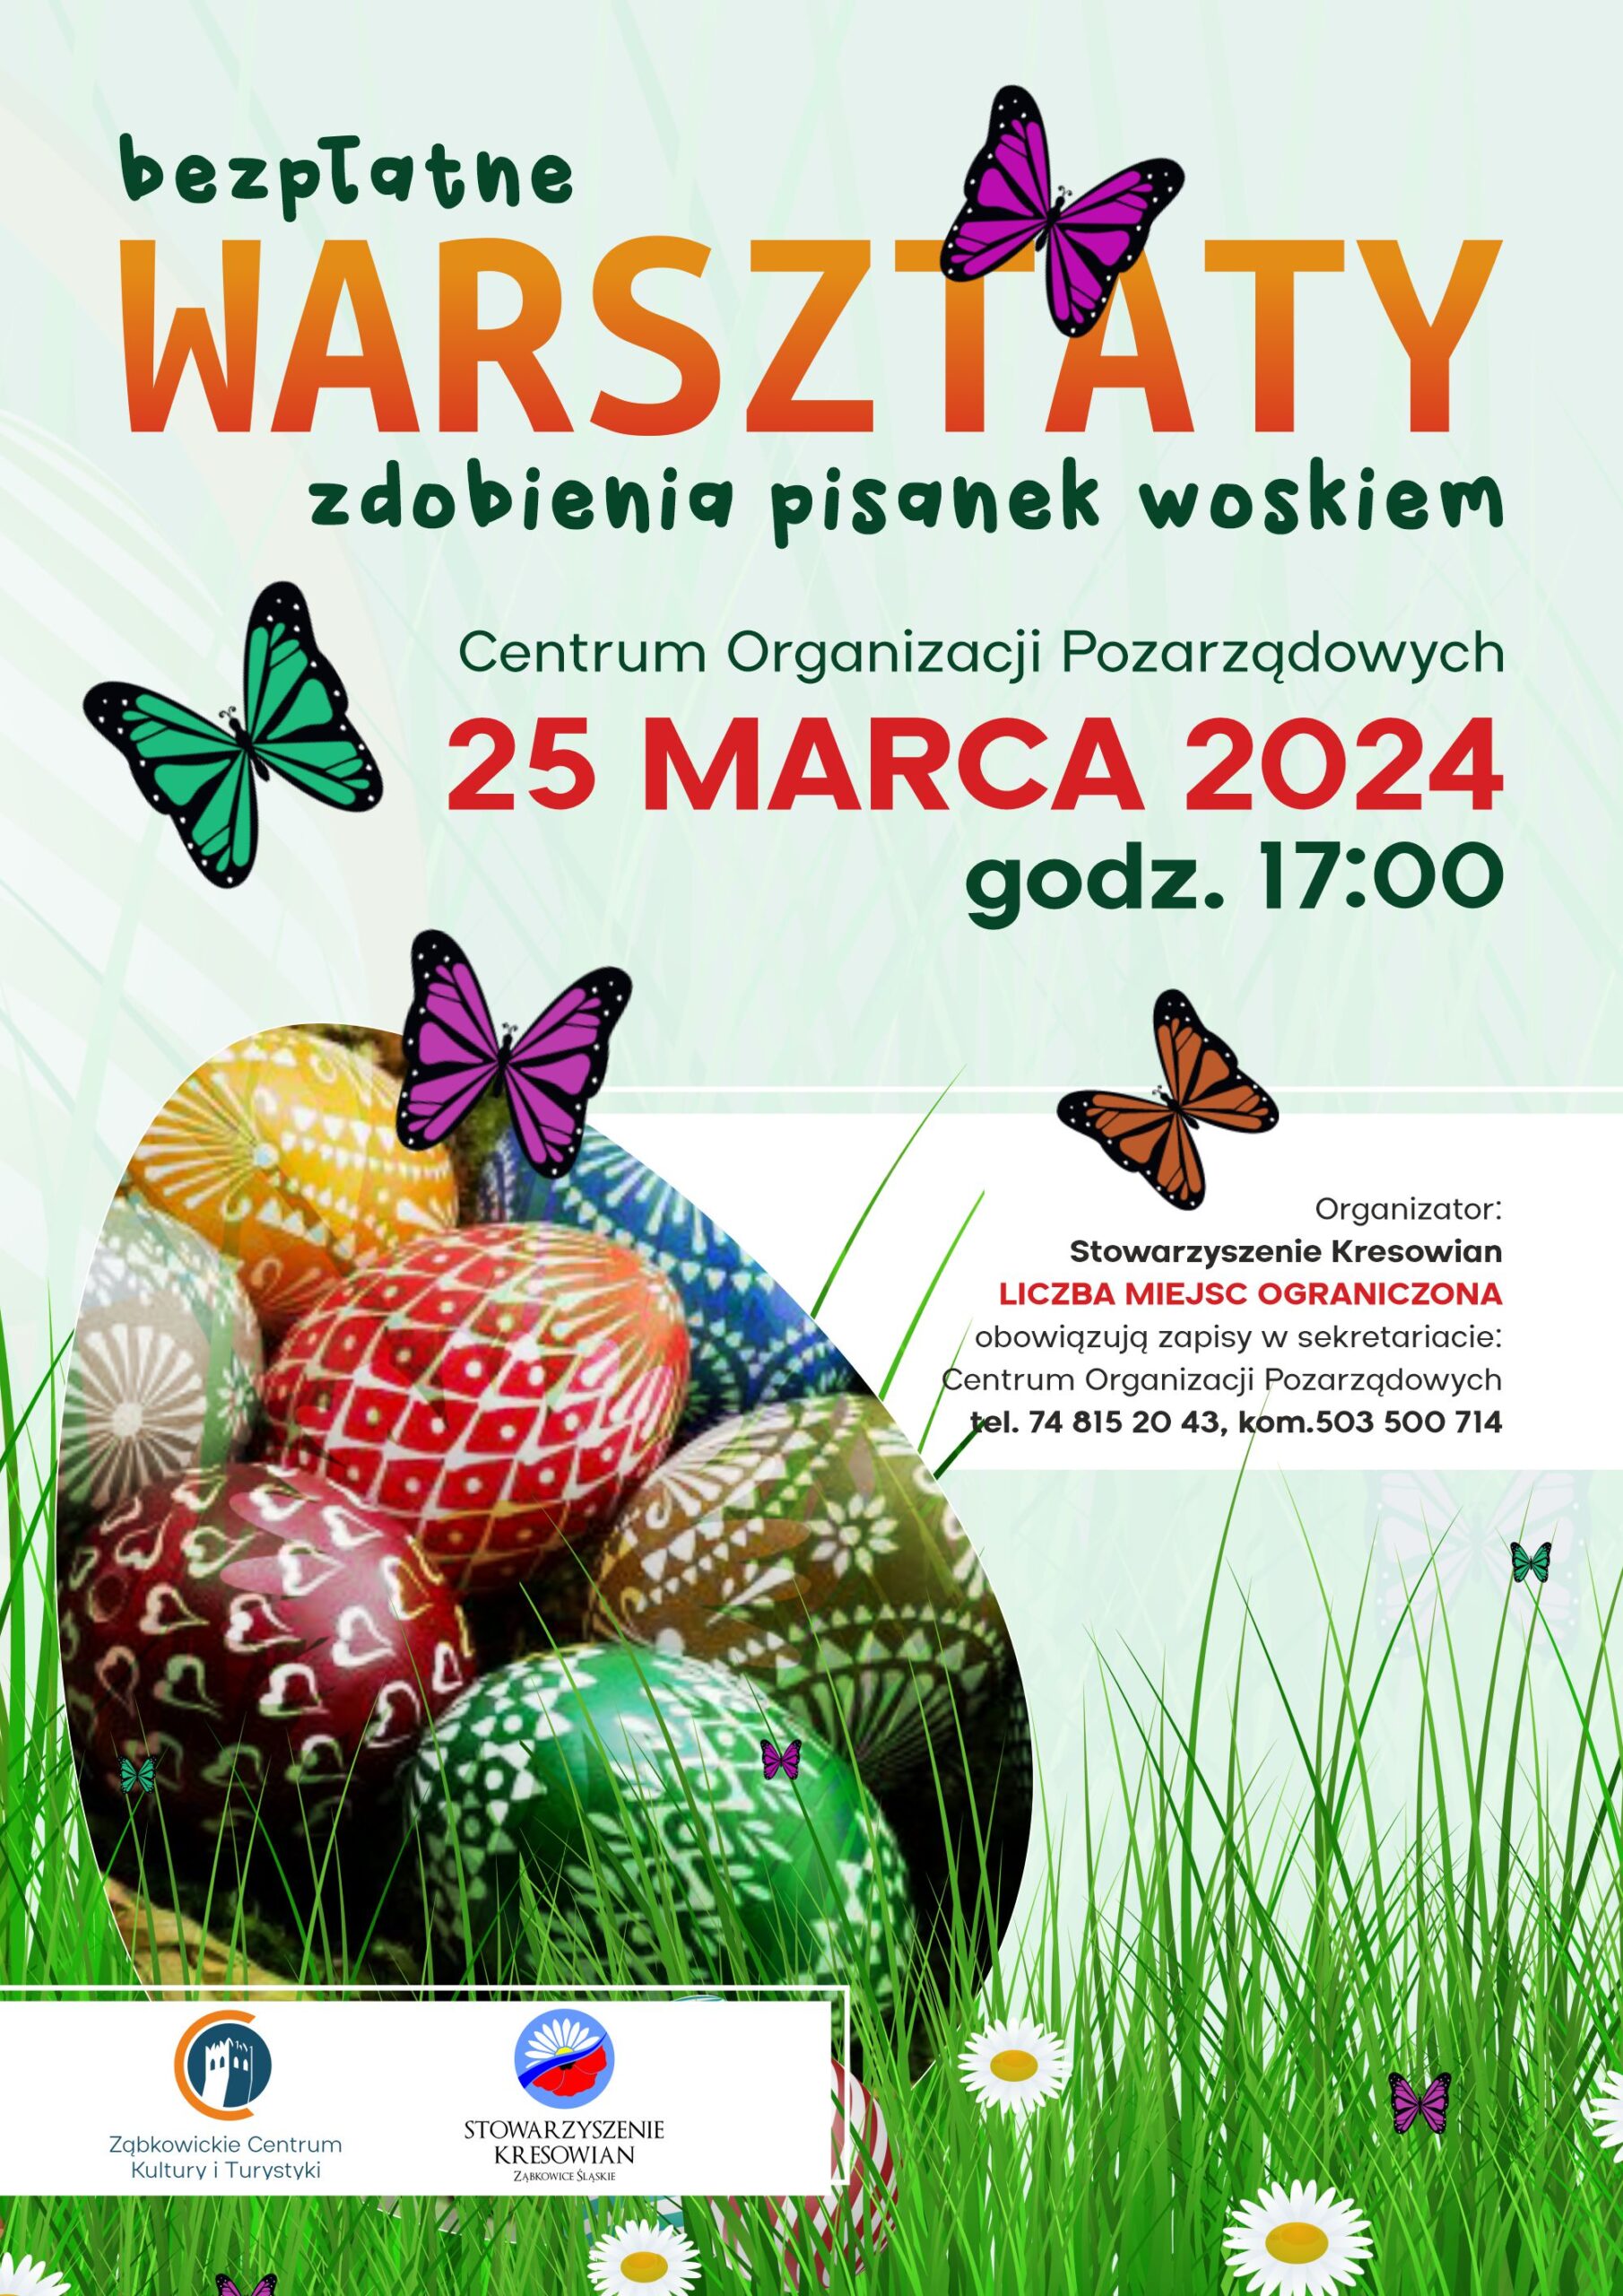 Plakat informujący o bezpłatnych warsztatach zdobienia pisanek woskiem, który odbył się 25 marca 2024 roku o godzinie 17:00. Na plakacie znajduje się kolorowa pisanka na trawie w towarzystwie motyli.